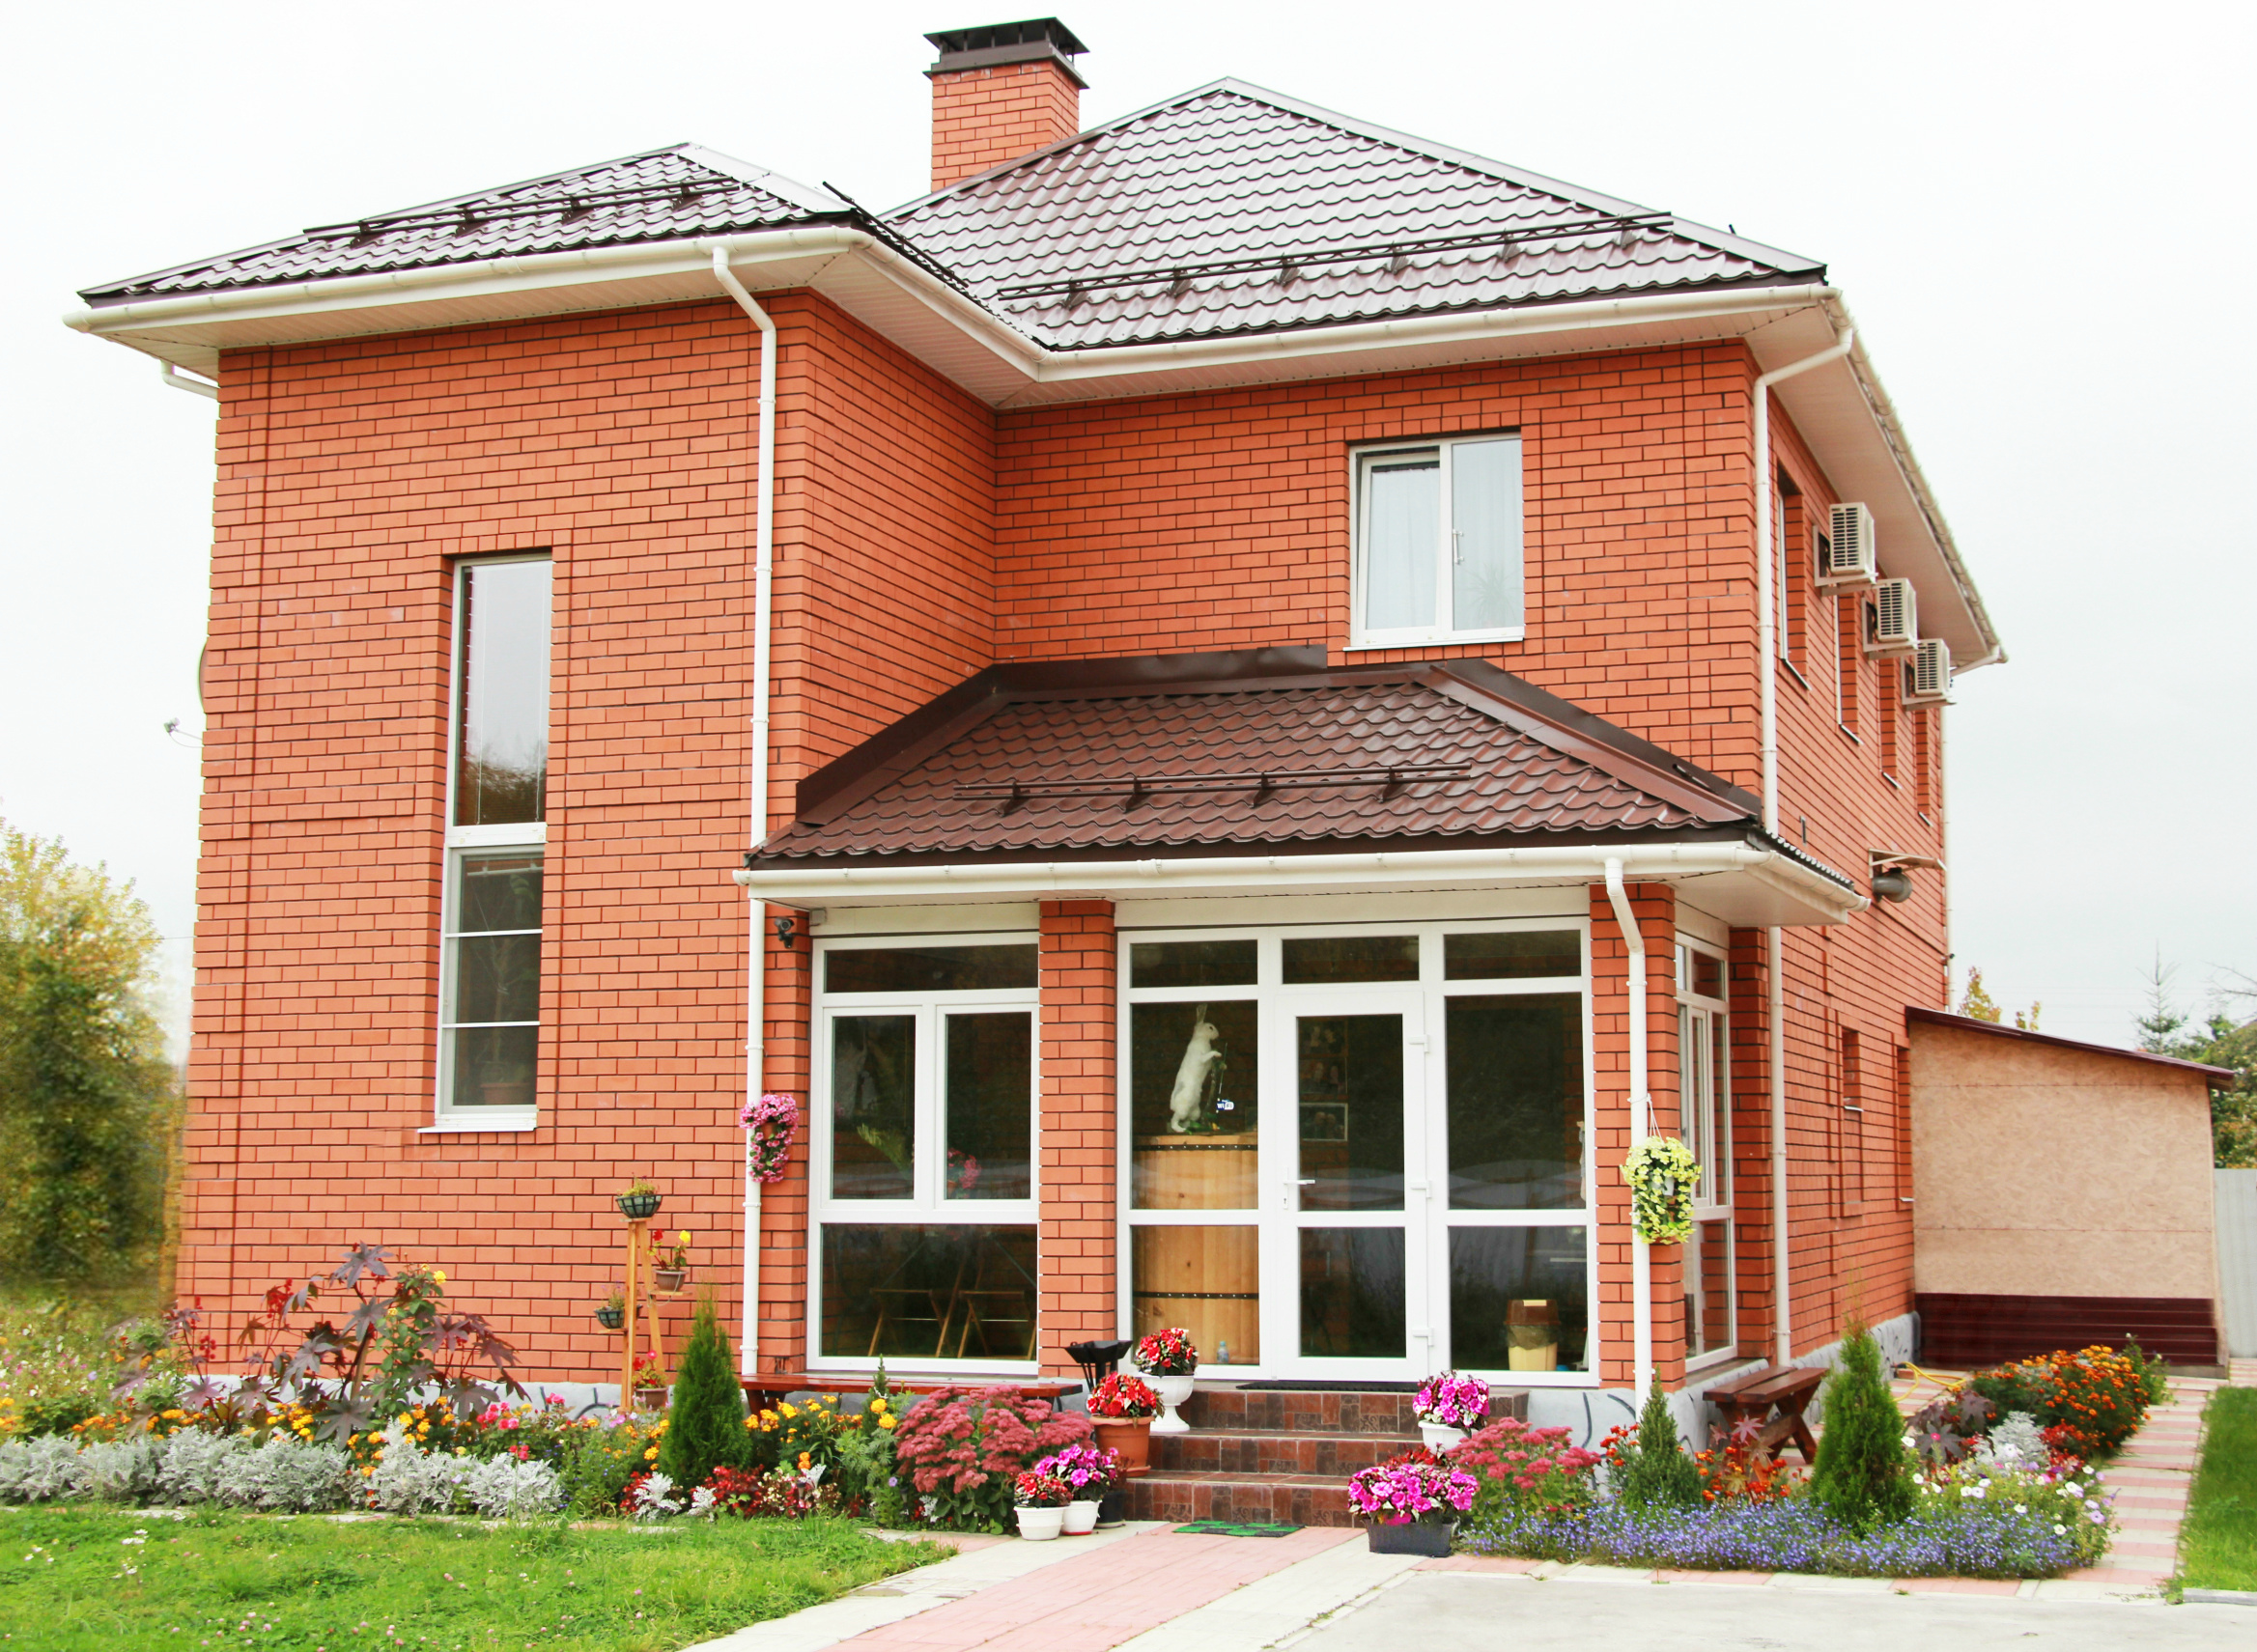 Гостевой дом отдыха в Павловском Посаде предлагает в аренду комфортные комнаты в частном коттедже